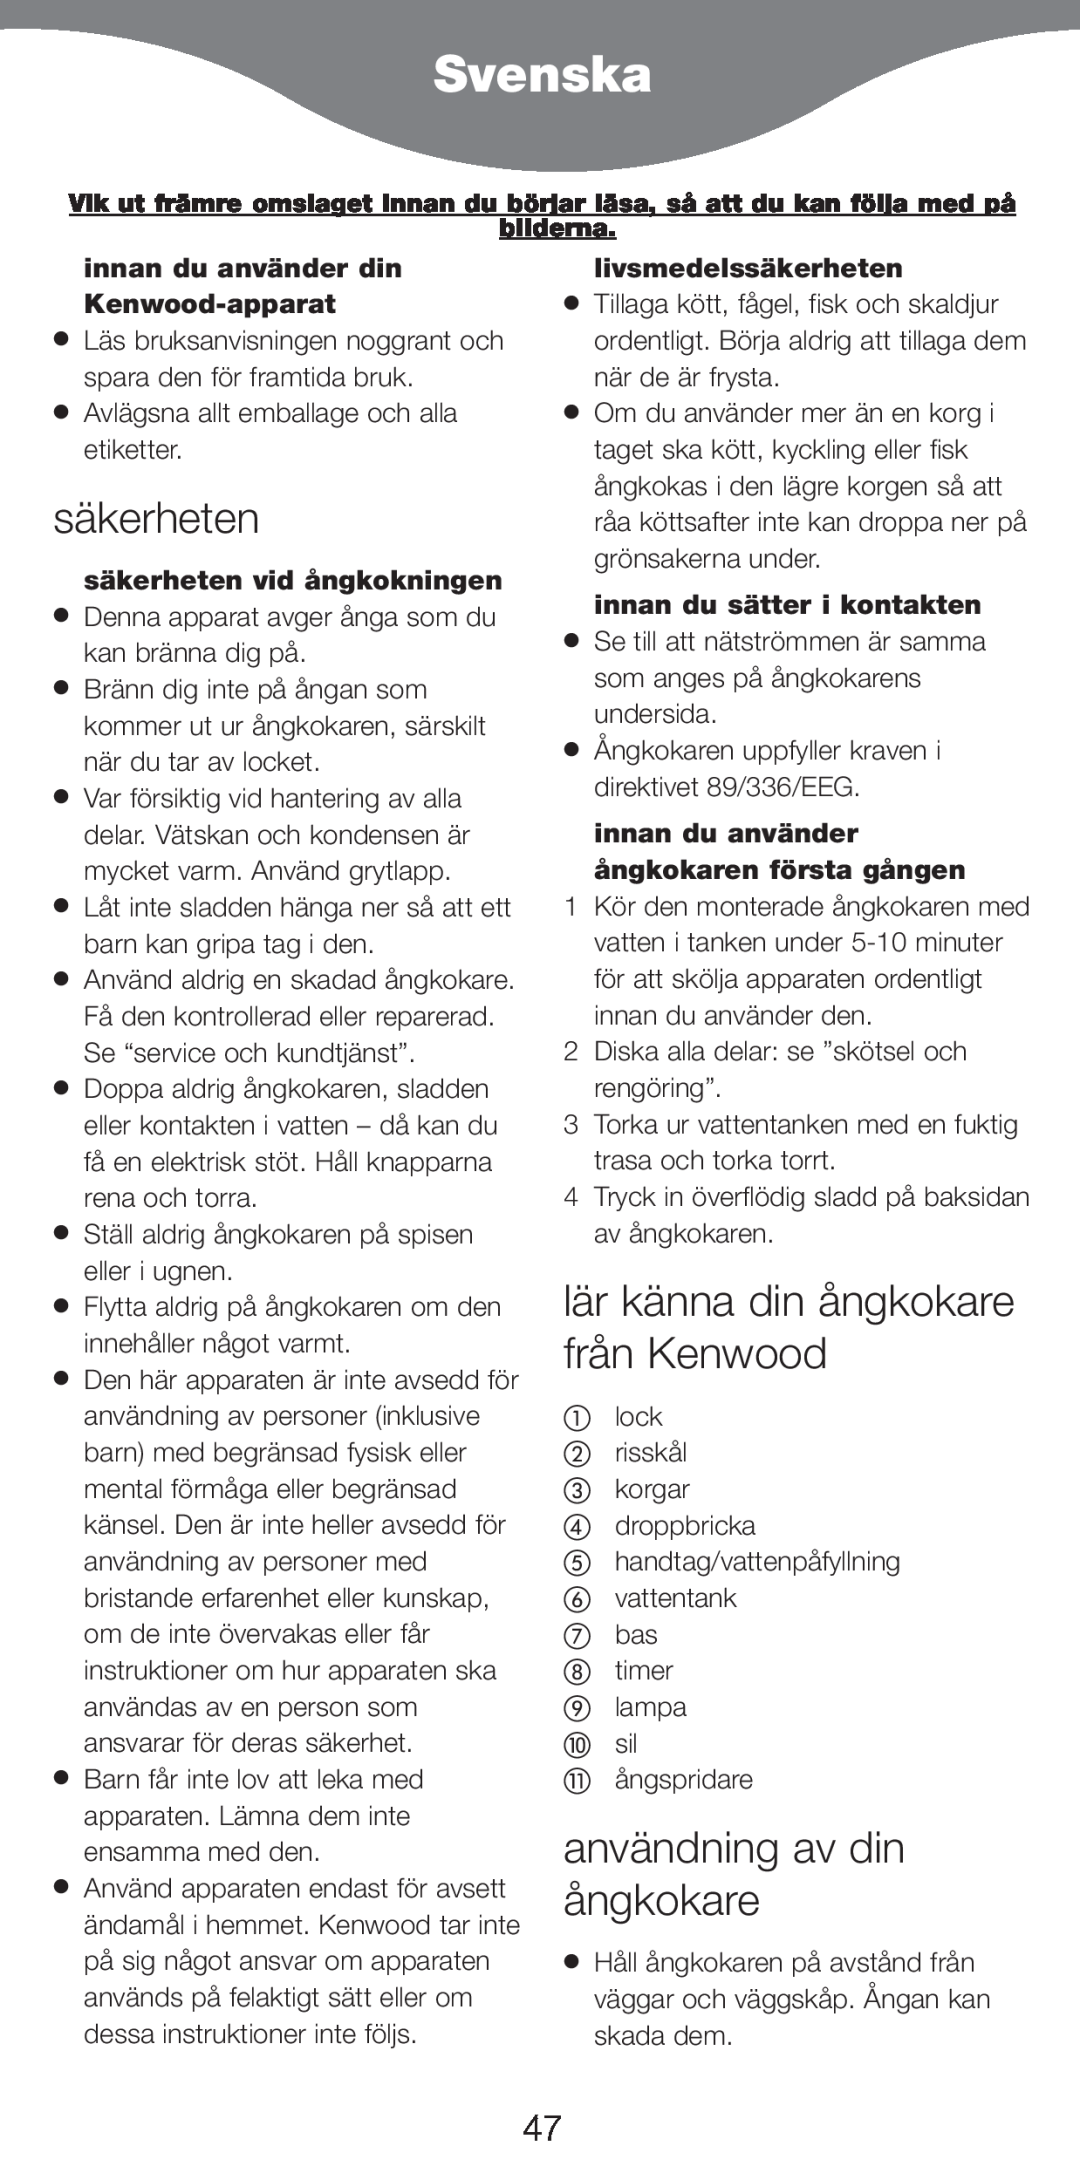 Kenwood FS370 manual Svenska, anvŠndning av din Œngkokare, lŠr kŠnna din Œngkokare frŒn Kenwood, livsmedelssŠkerheten 